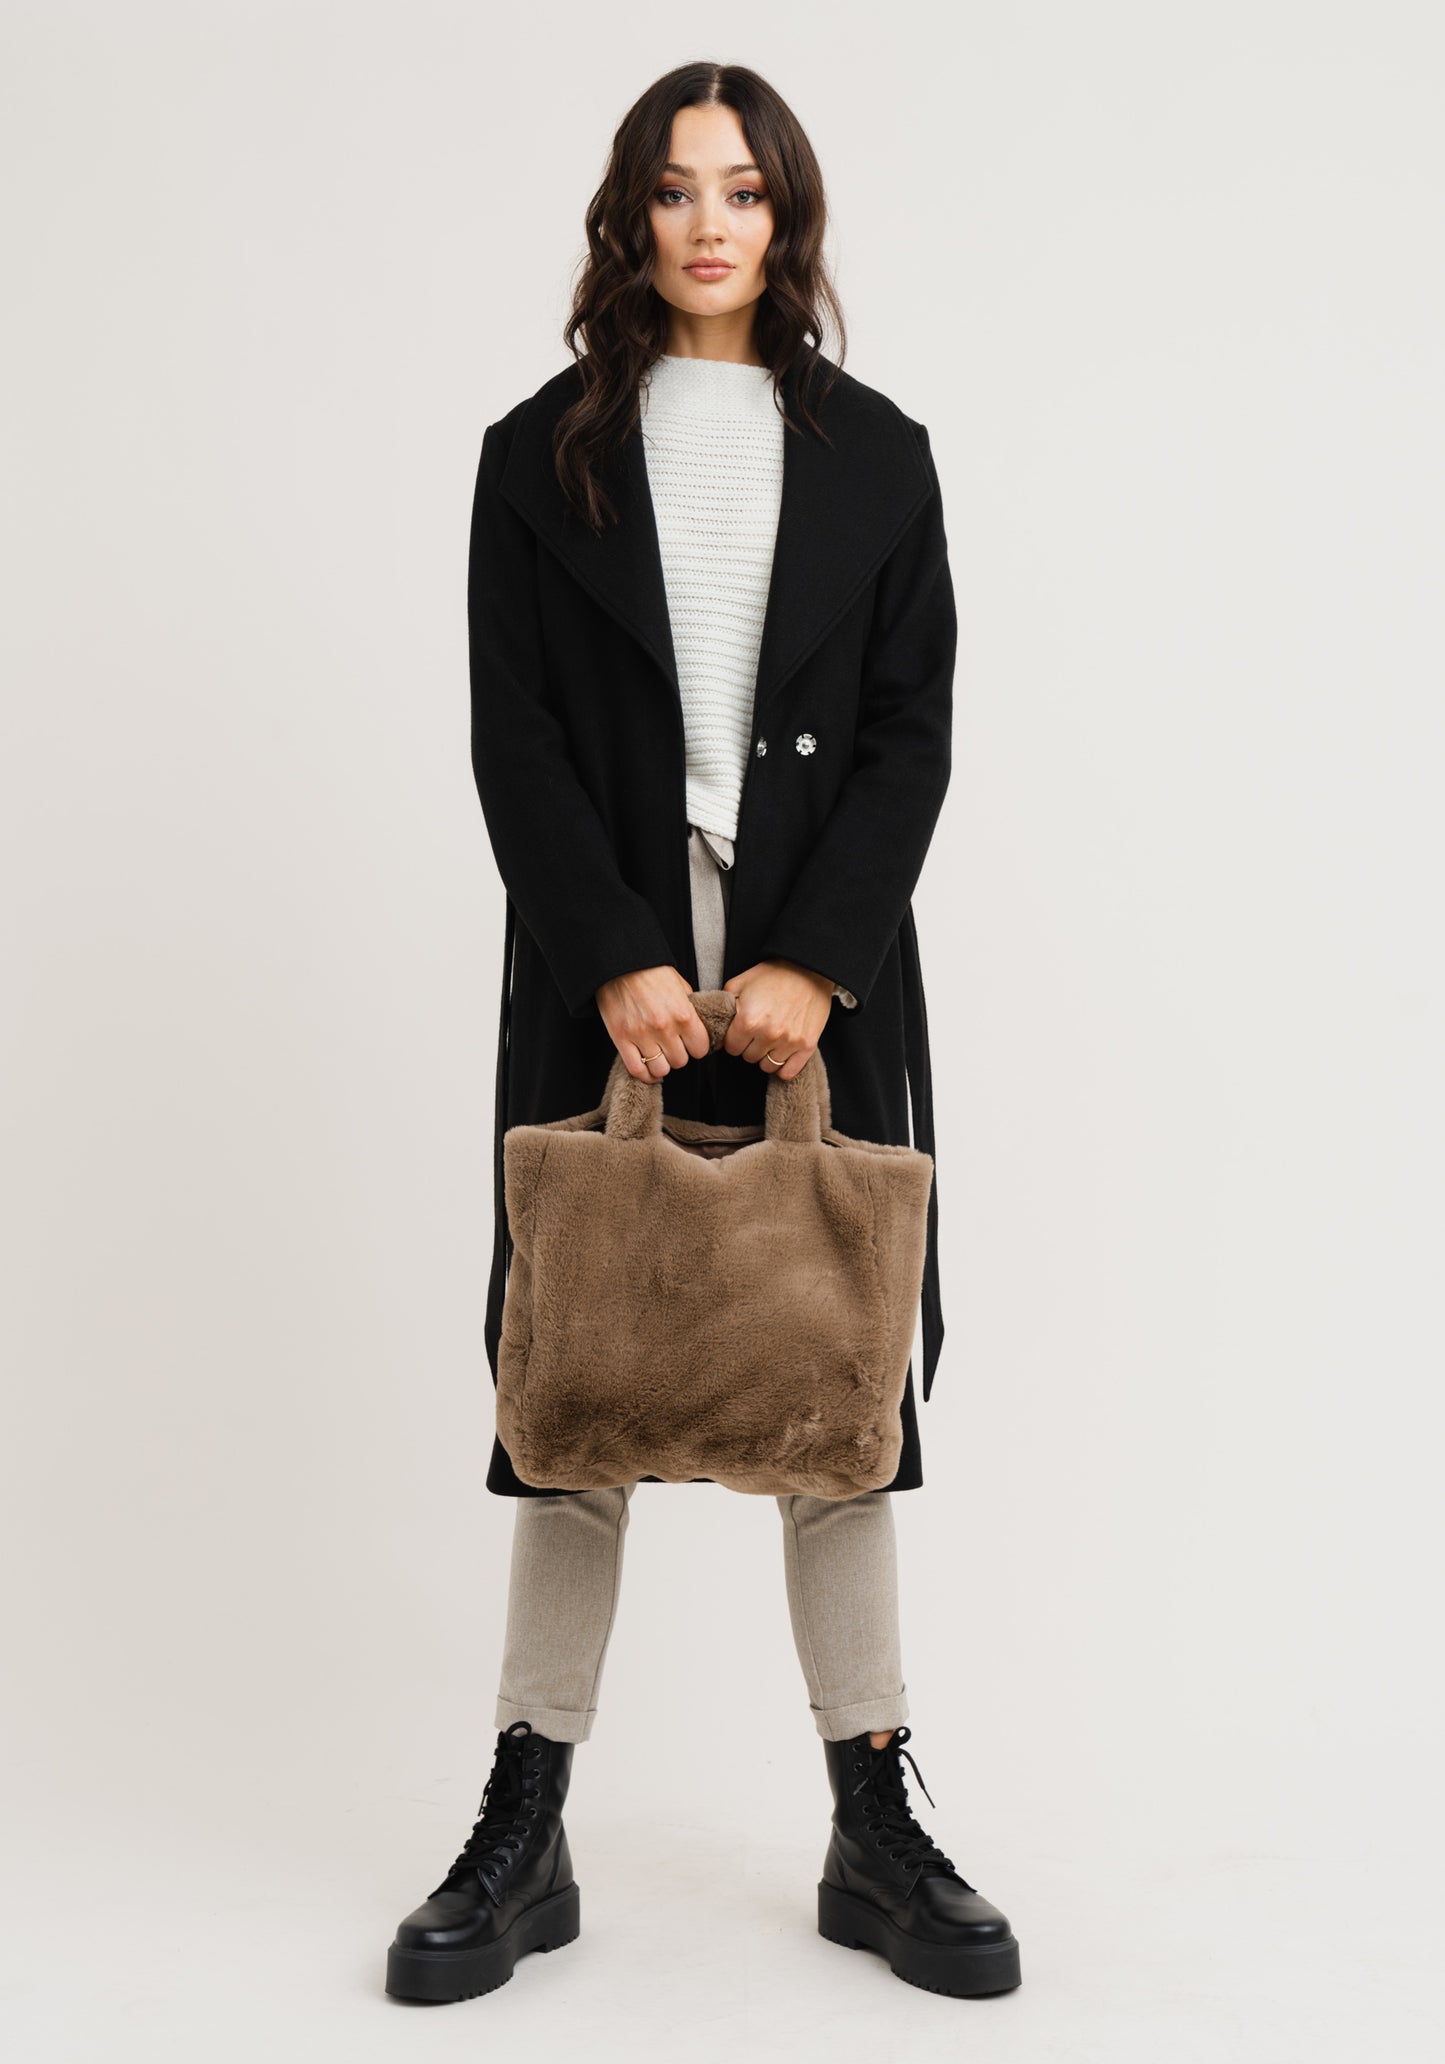 Fluffy shoulder bag - Anna shoes & more